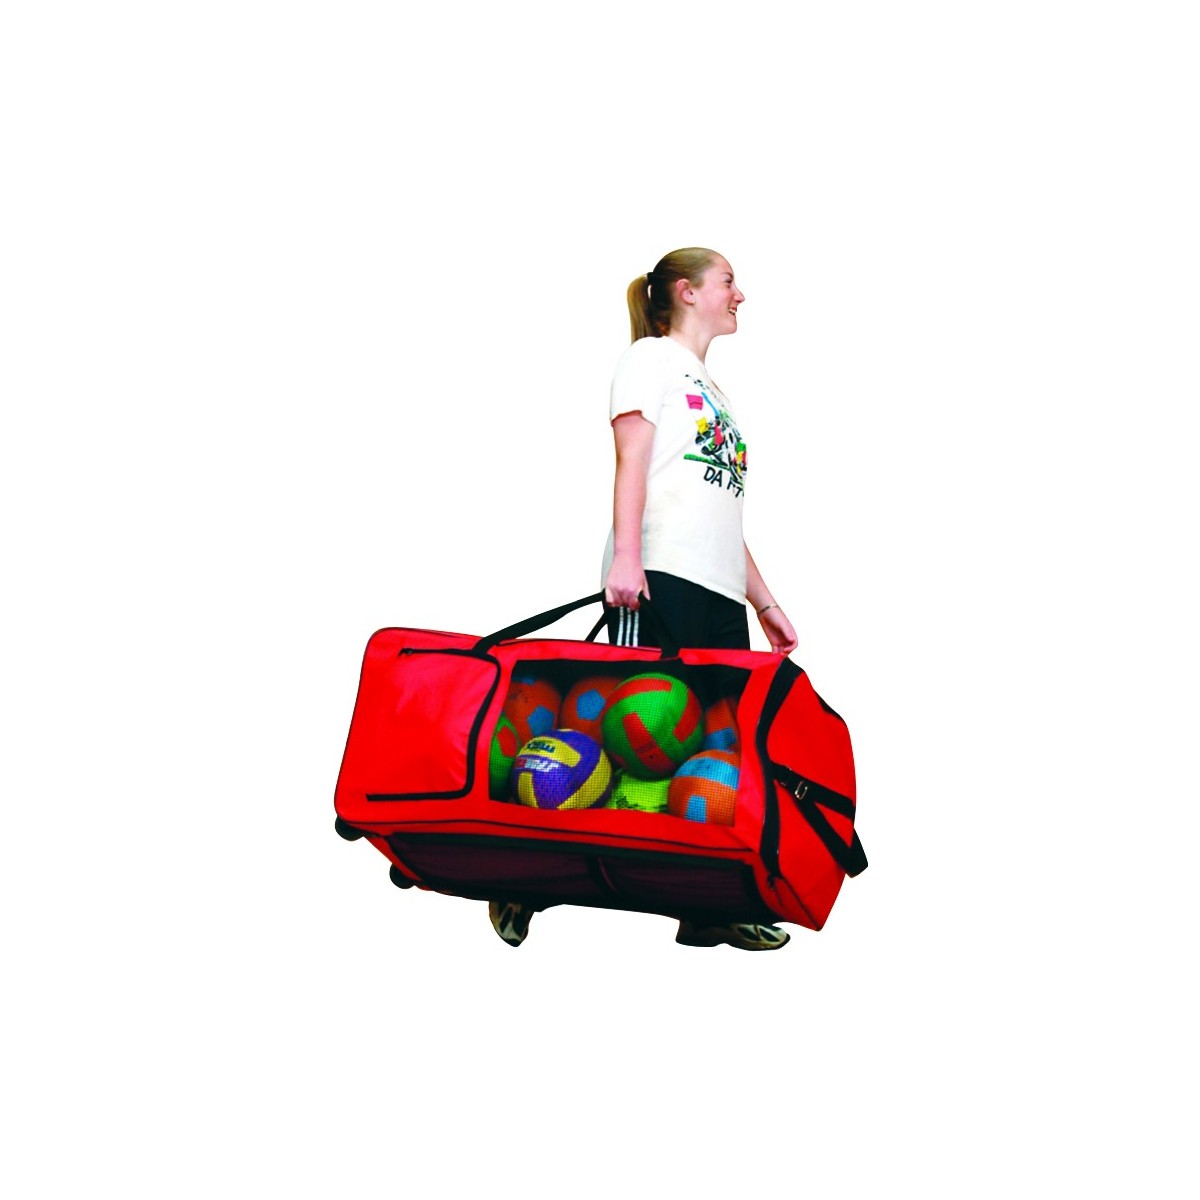 Méga sac avec 11 poches de qualité Spordas pour le transport facile de matériel sportif.